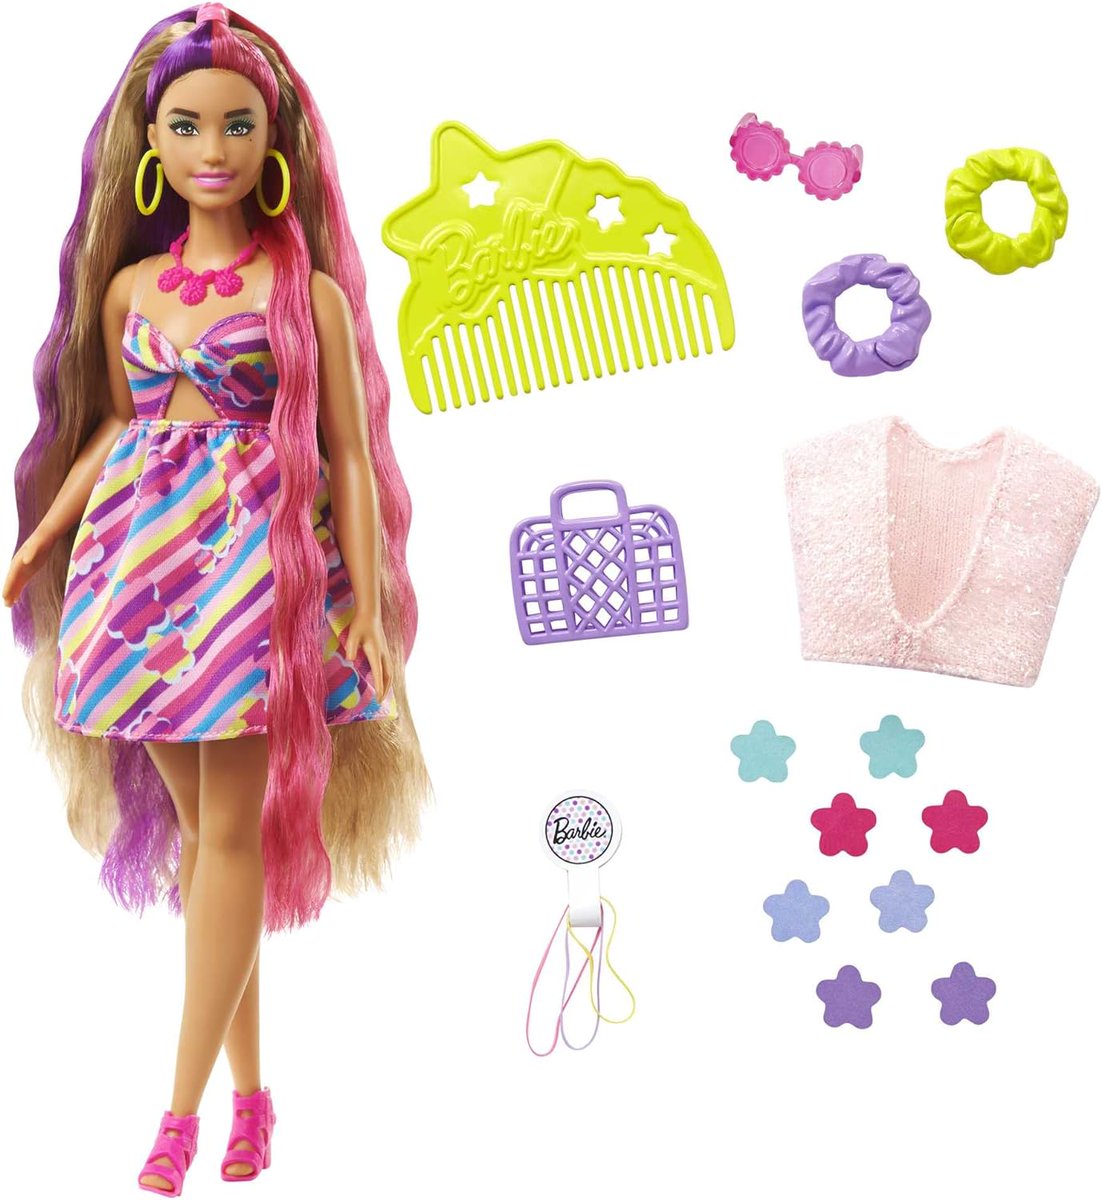 😍 OFERTA – 72% SOLO 10.5€ 😍 Barbie Totally Hair Pelo extralargo Flor Muñeca Morena Curvy con Vestido y Accesorios de Flores para el Pelo, Juguete +3 años amzn.to/4dHauOU